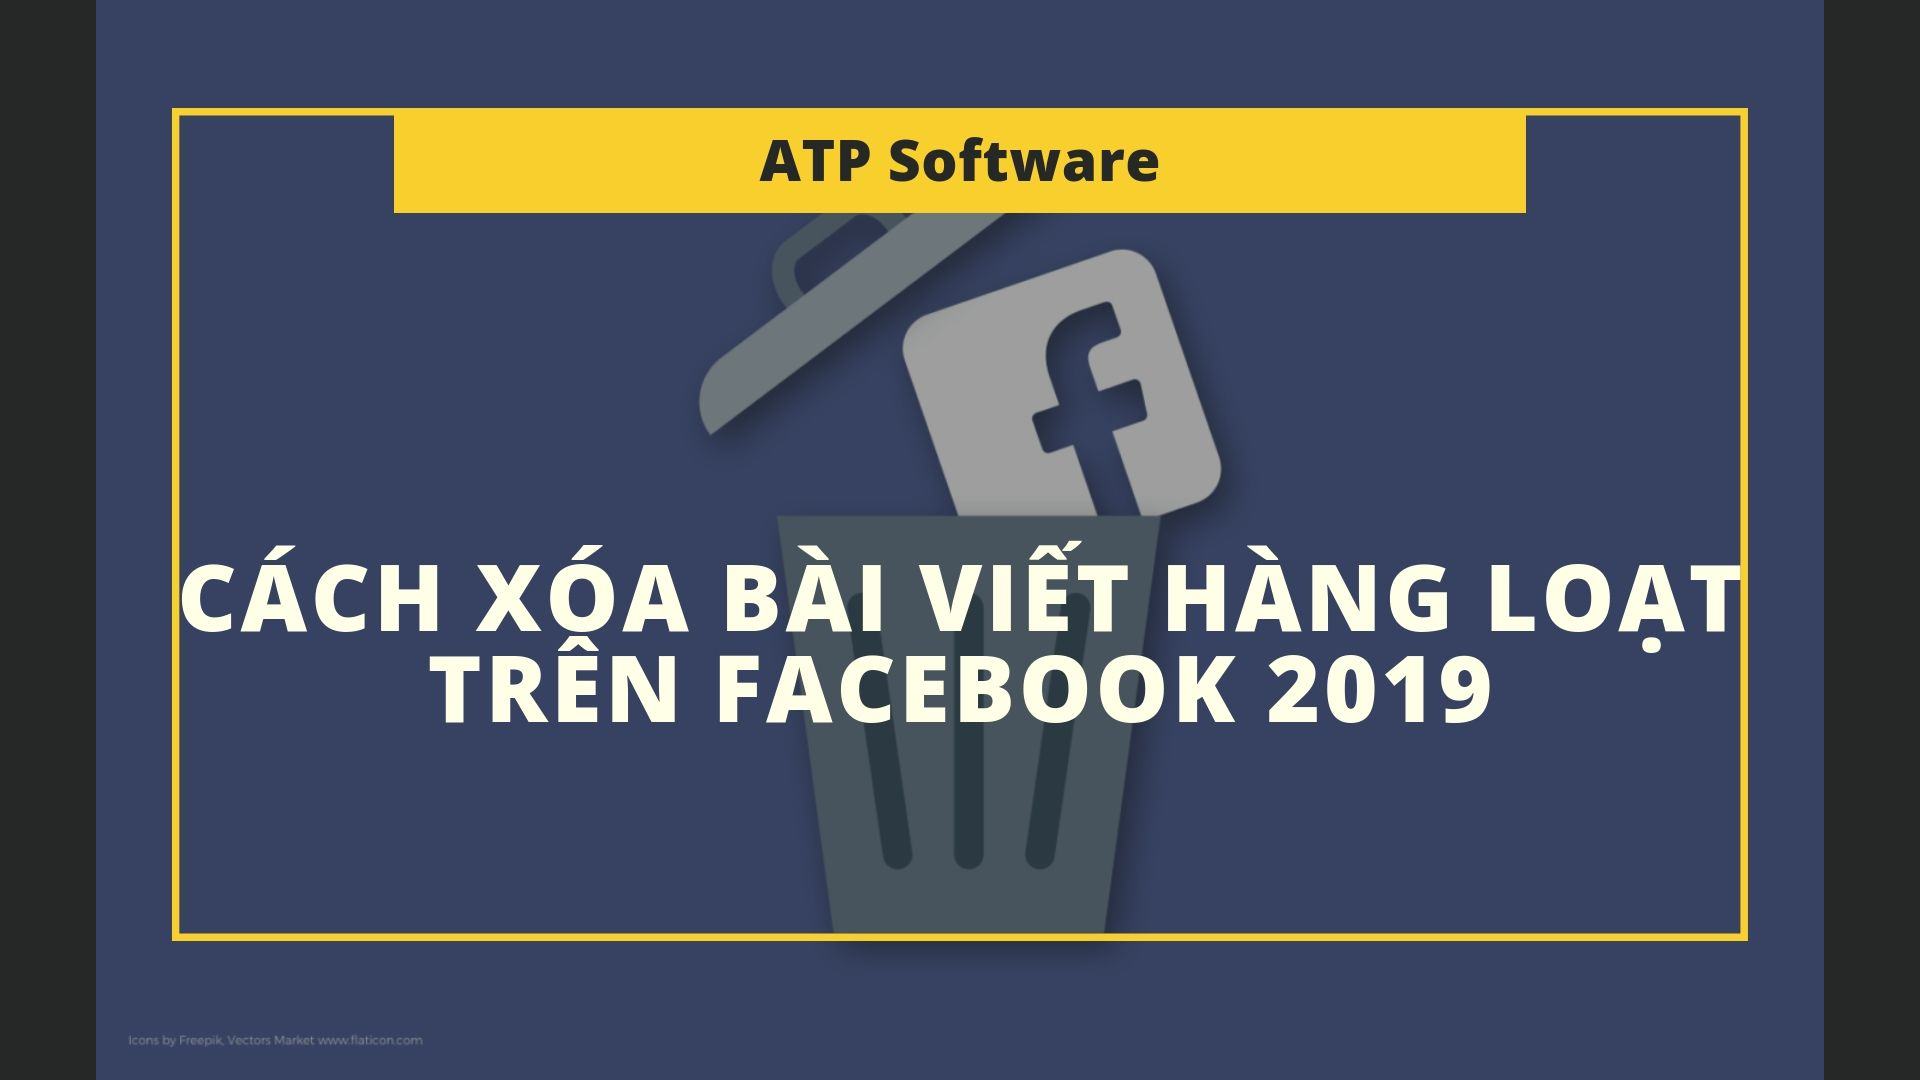 Cách xóa bài viết hàng loạt trên Facebook 2020 đơn giản và dễ dàng | ATP Software